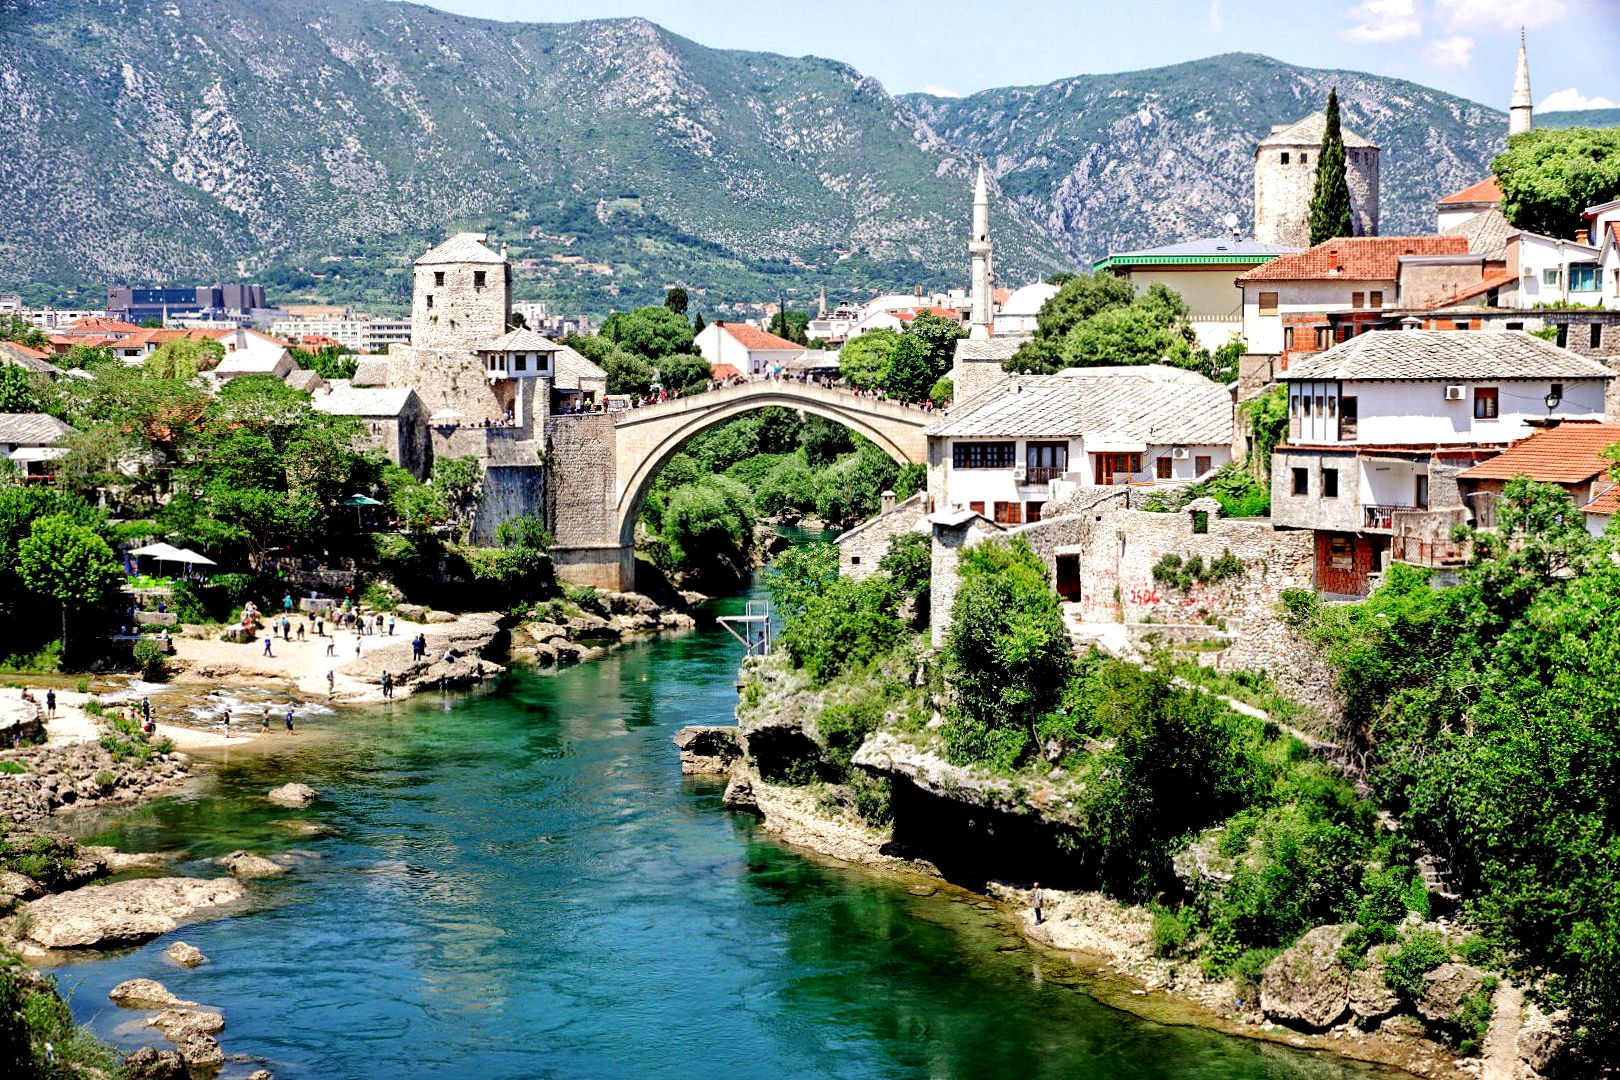 Bośnia i Hercegowina kusi orientalnmą egzotyką, niskimi cenami i takimi widokami